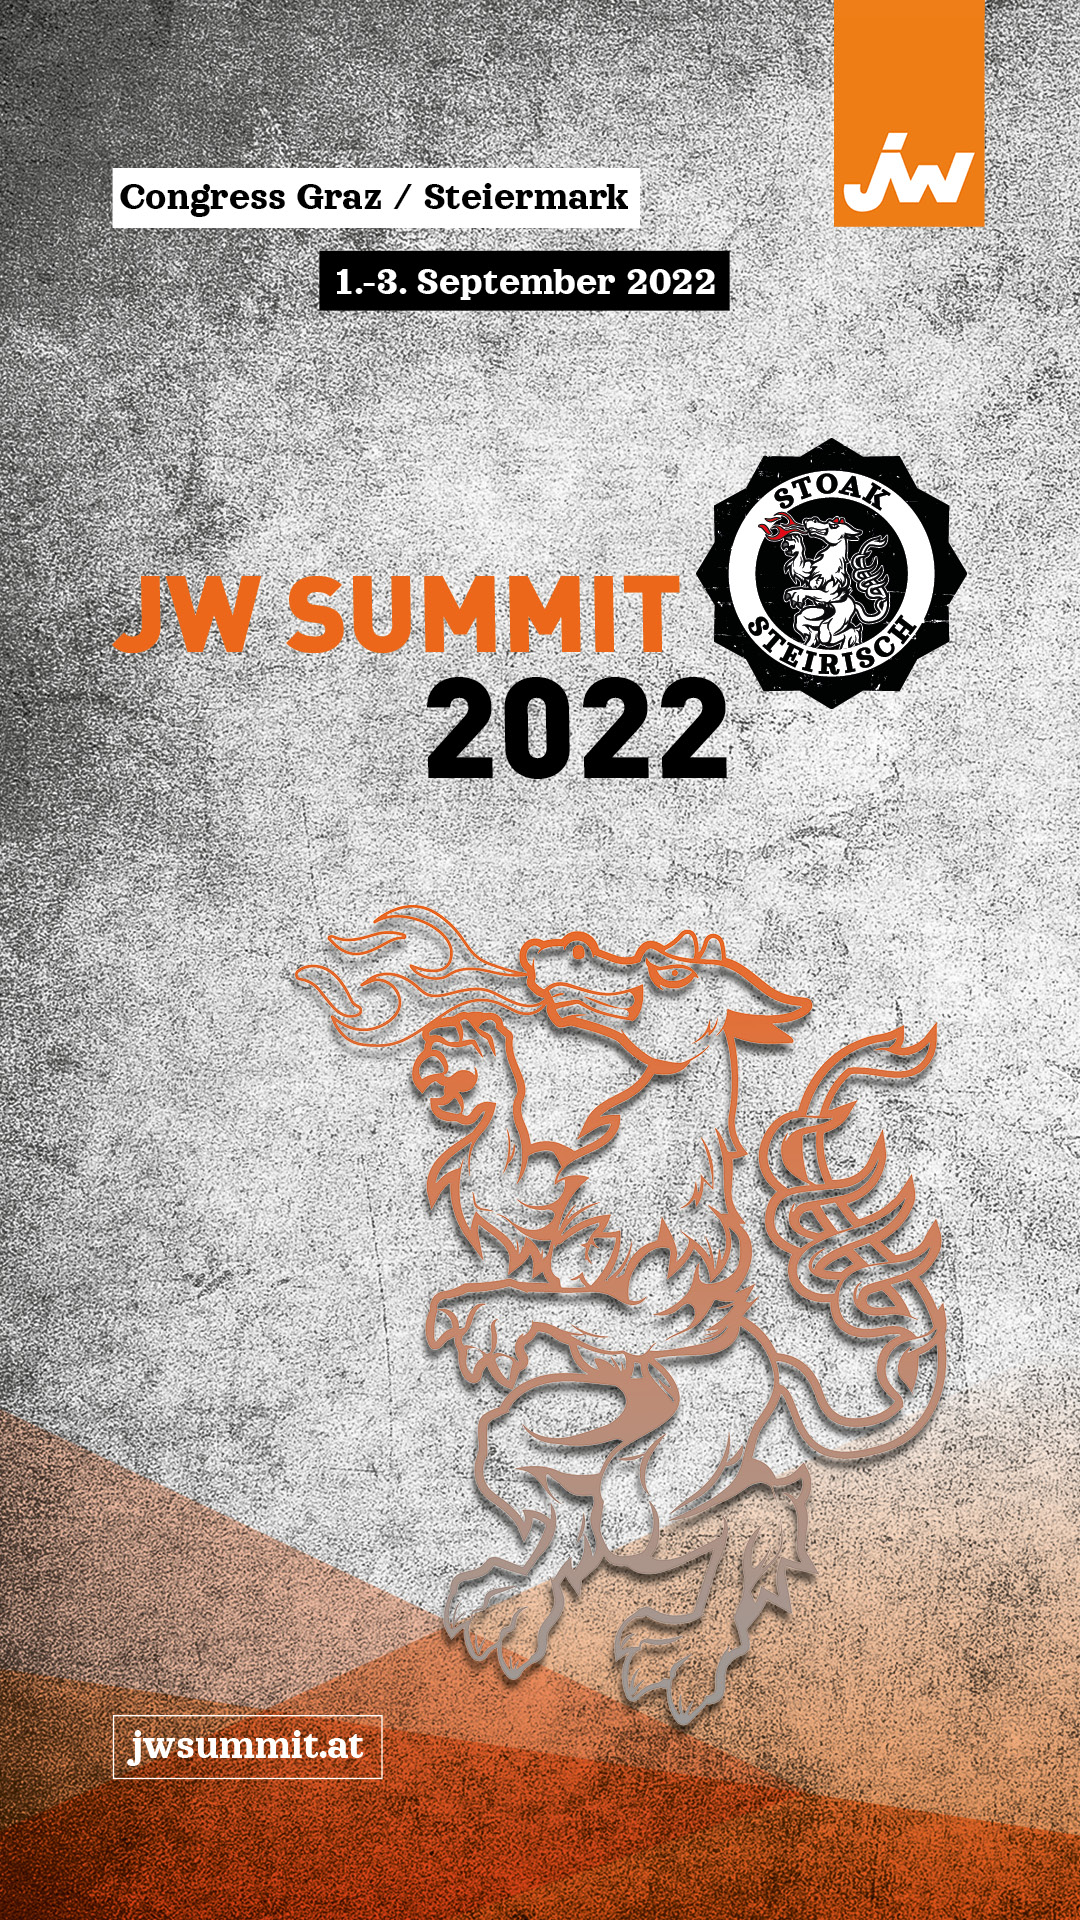 JW Summit vom 1. bis 3. September 2022 live in Graz